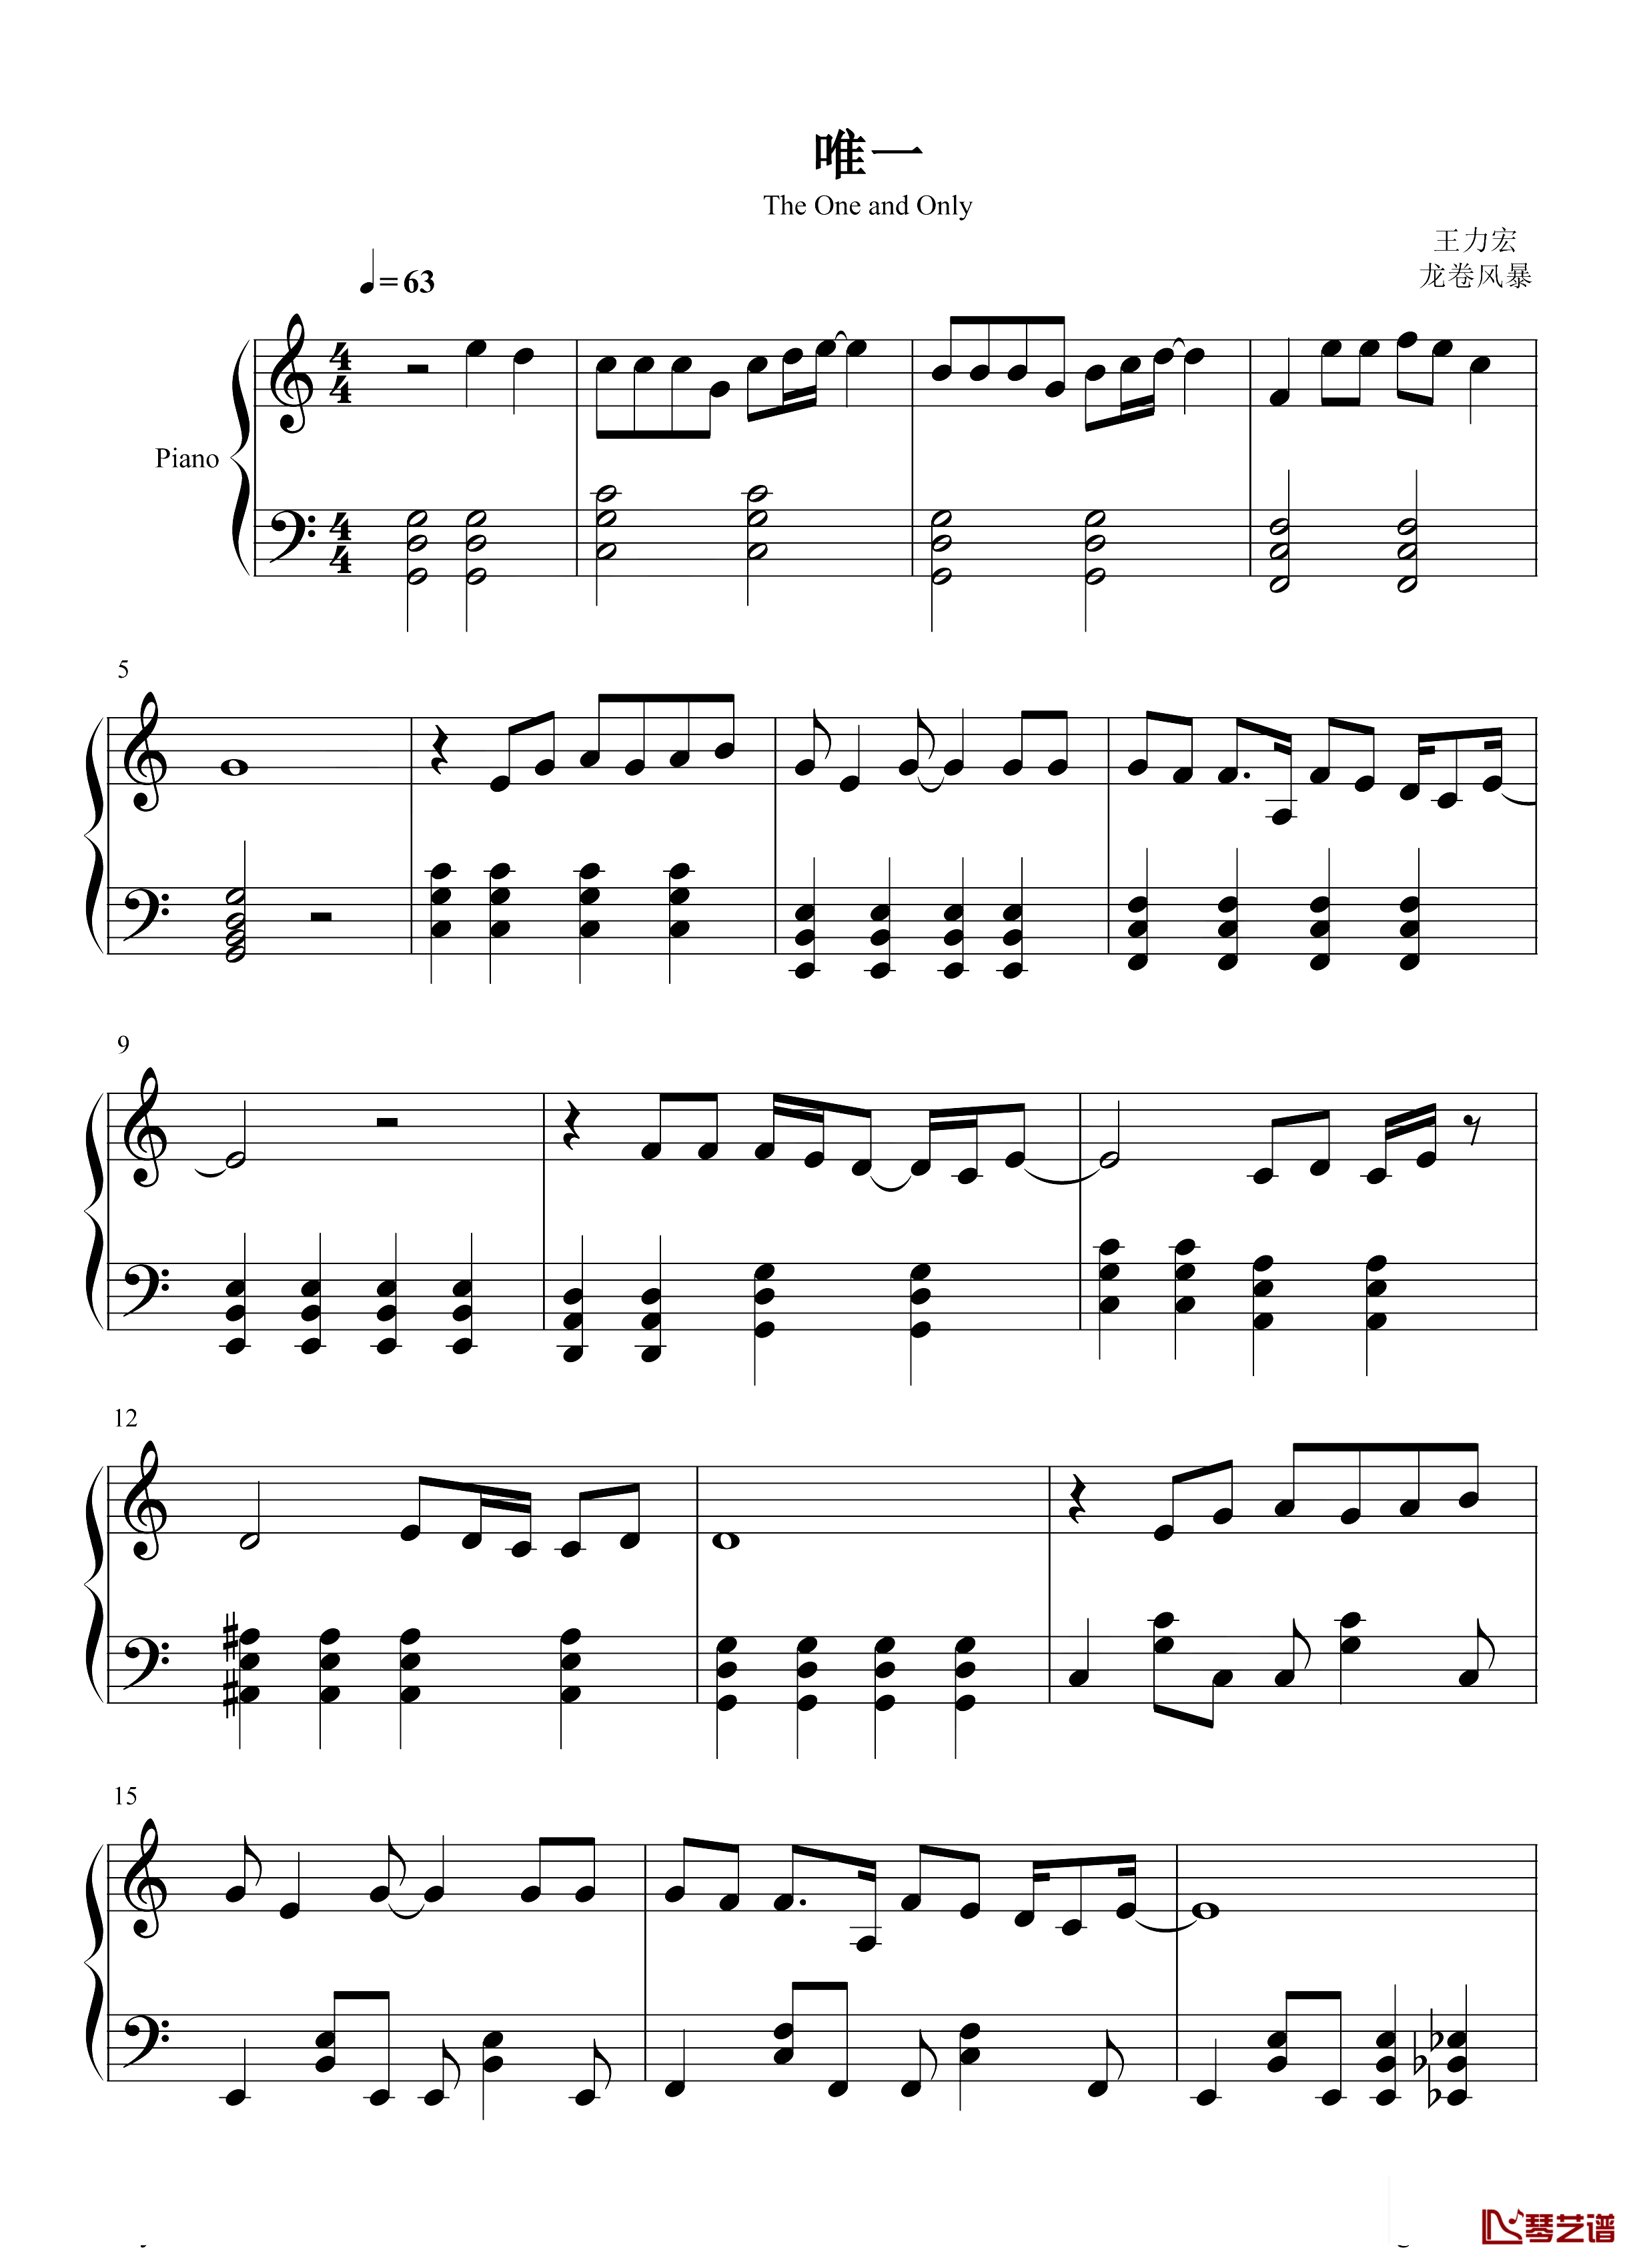 钢琴谱唯一-王力宏-王力宏最具流行度的作品之一!1